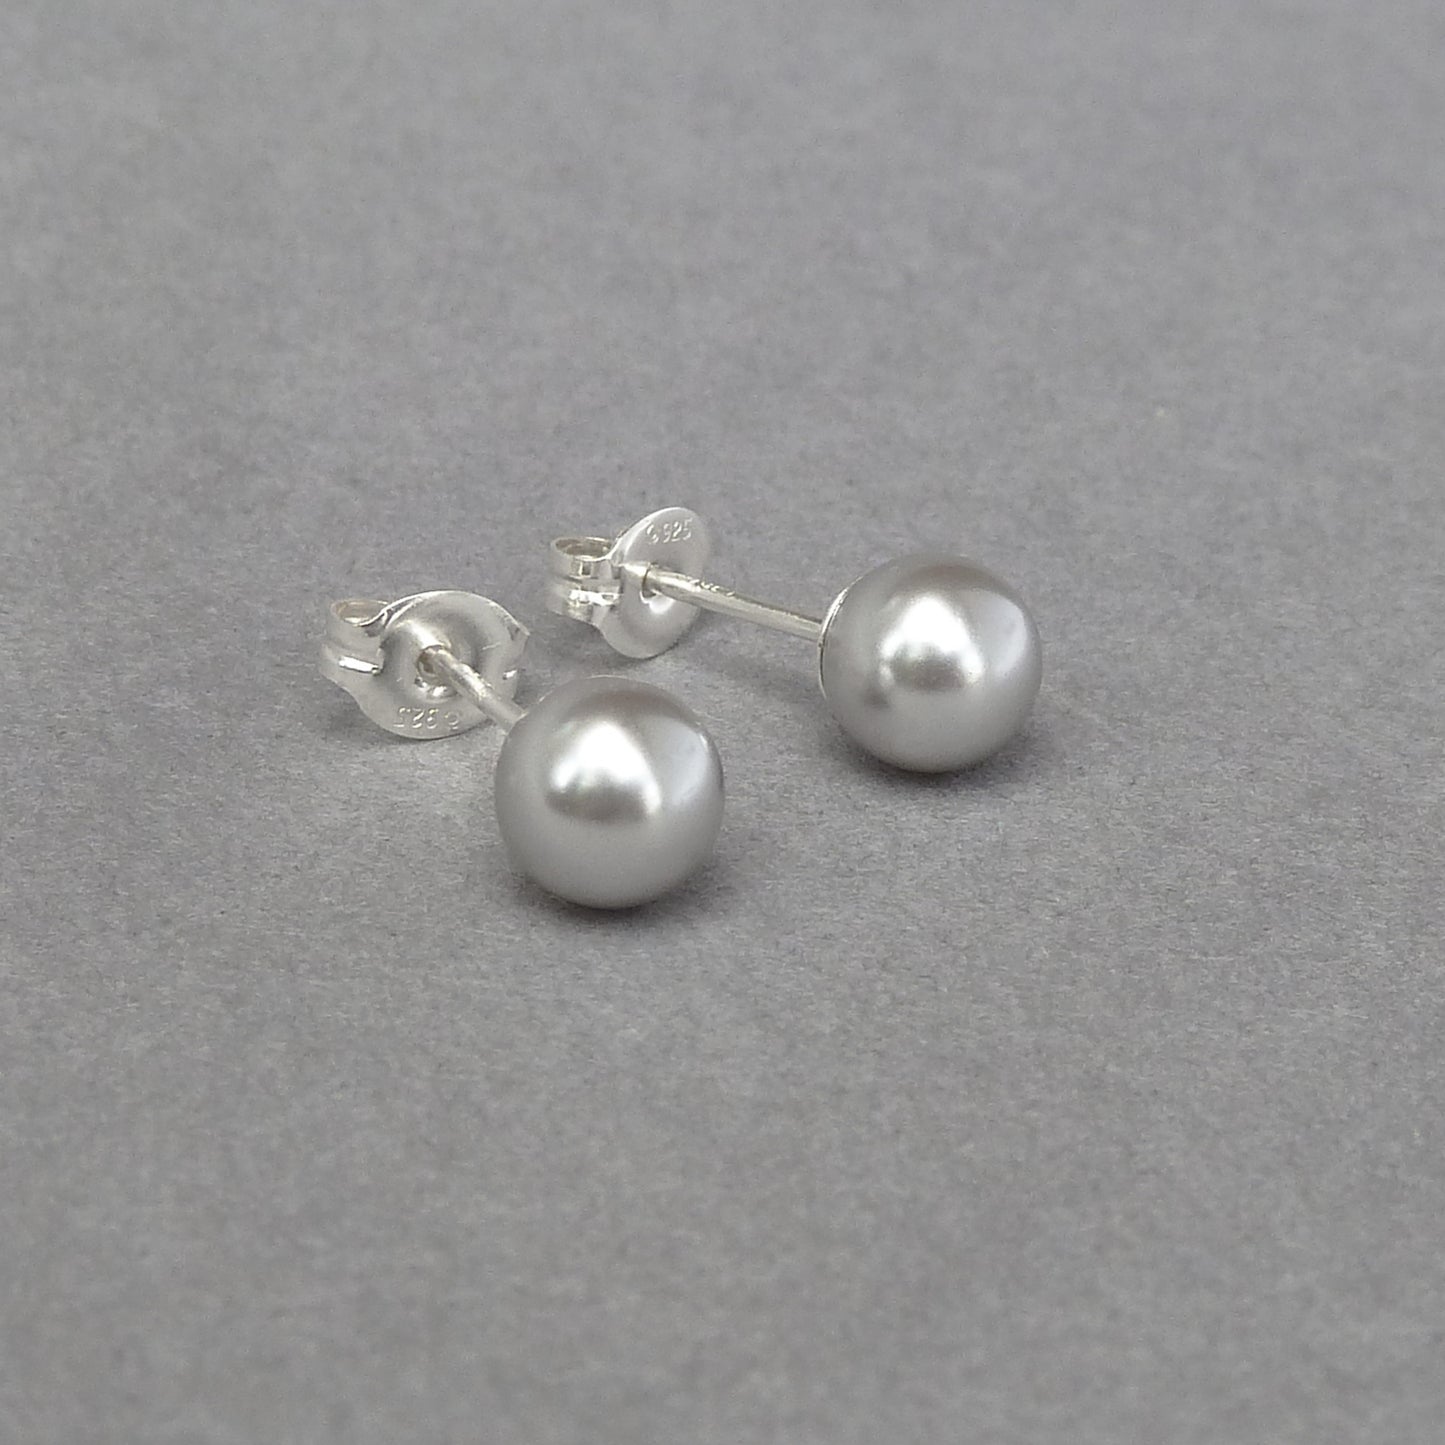 6mm light grey pearl stud earrings